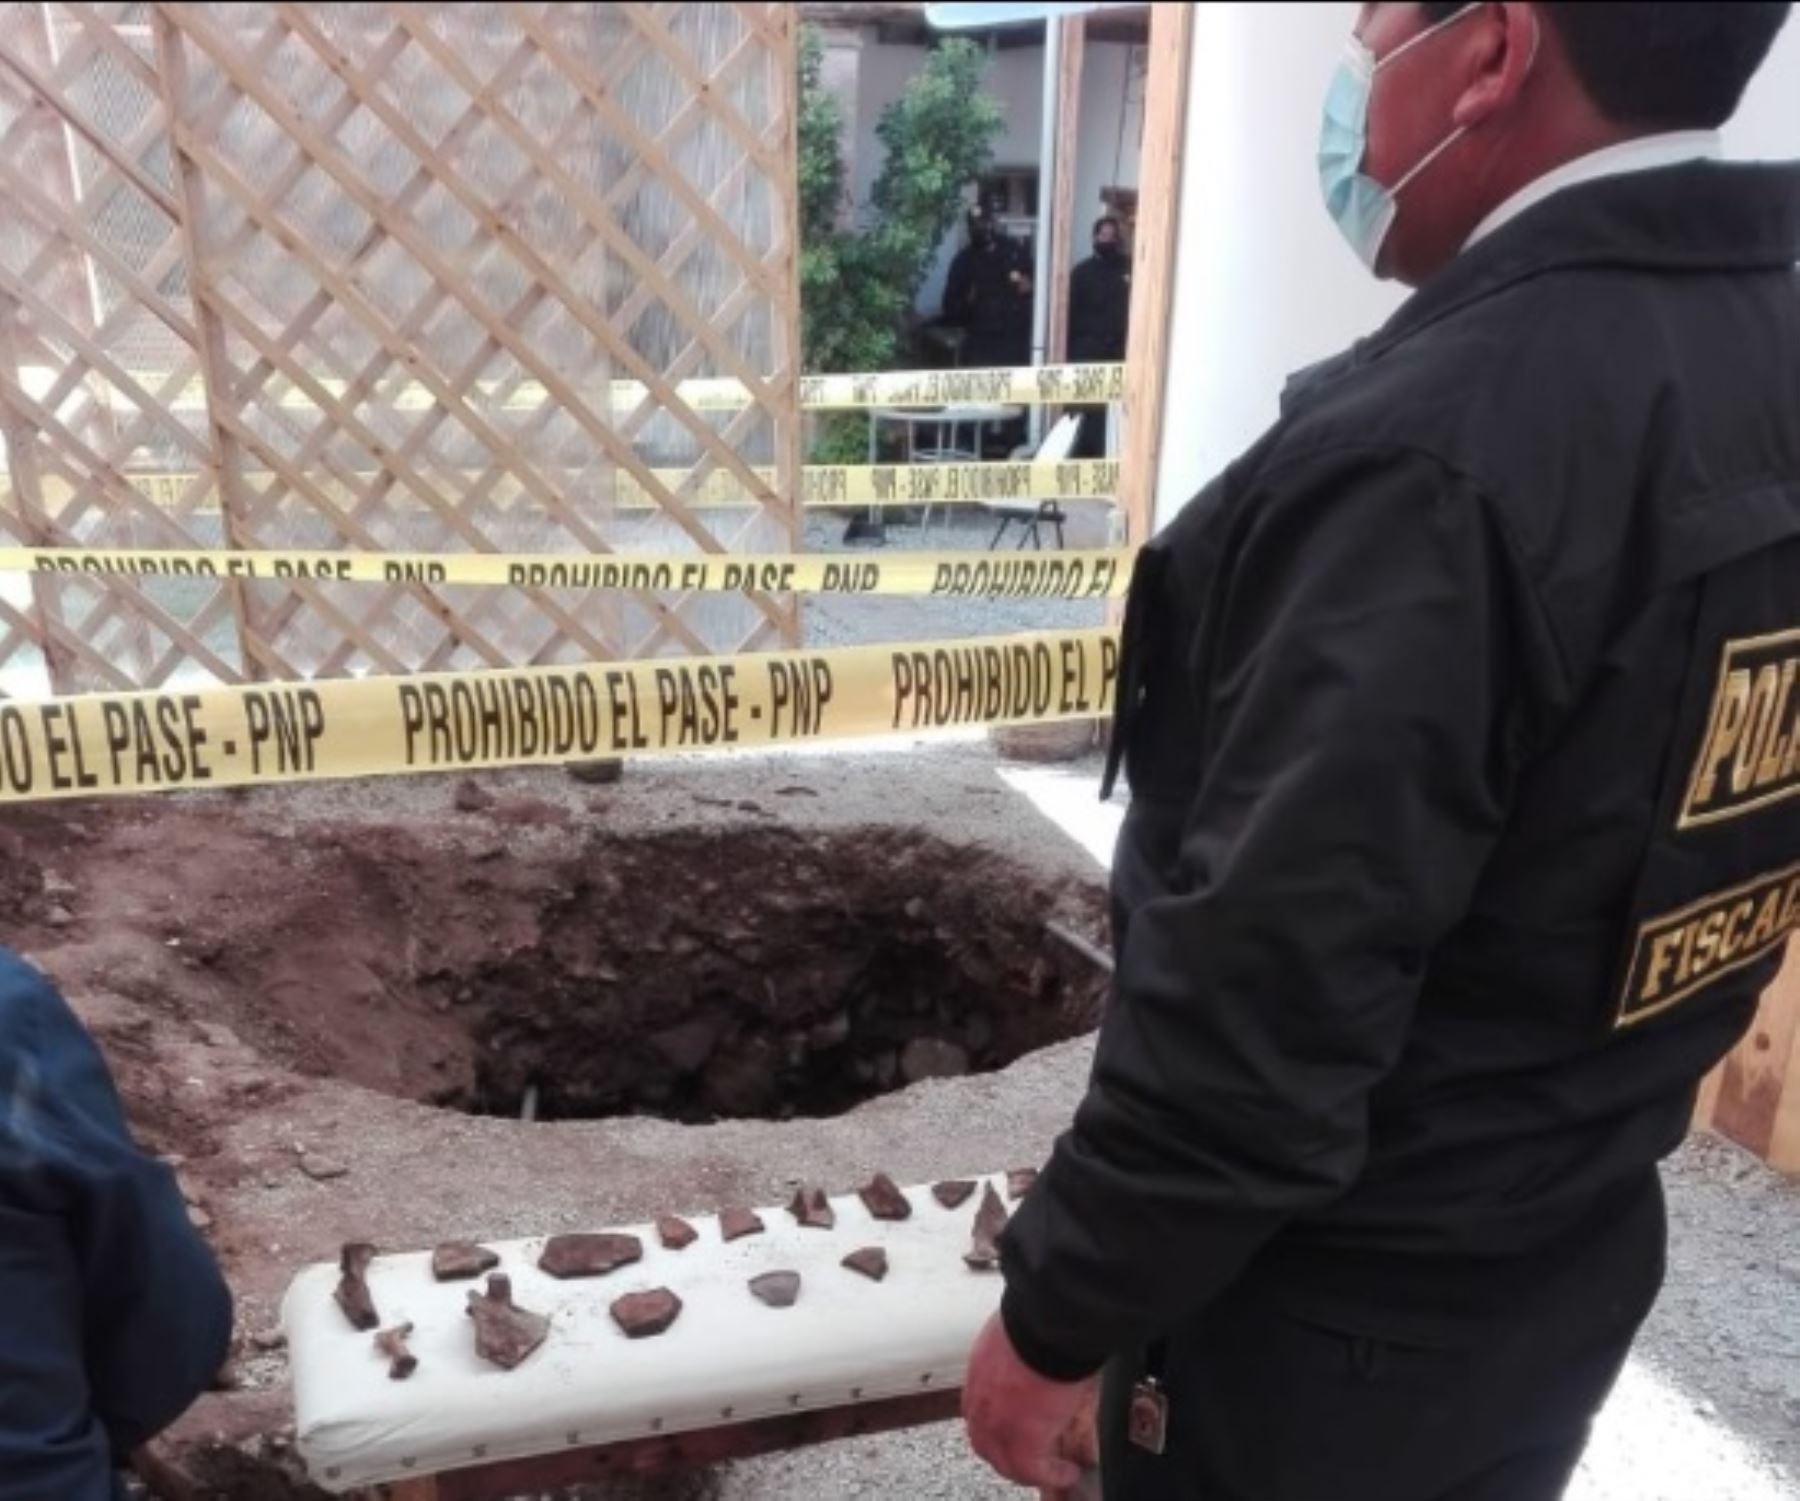 Trece personas, entre varones y mujeres, fueron detenidas por agentes la Policía Nacional y representantes de la Fiscalía de Prevención del Delito por retirar objetos arqueológicos y restos óseos del patio tras realizar un forado en una casona ubicada en el centro histórico de la ciudad de Cusco.